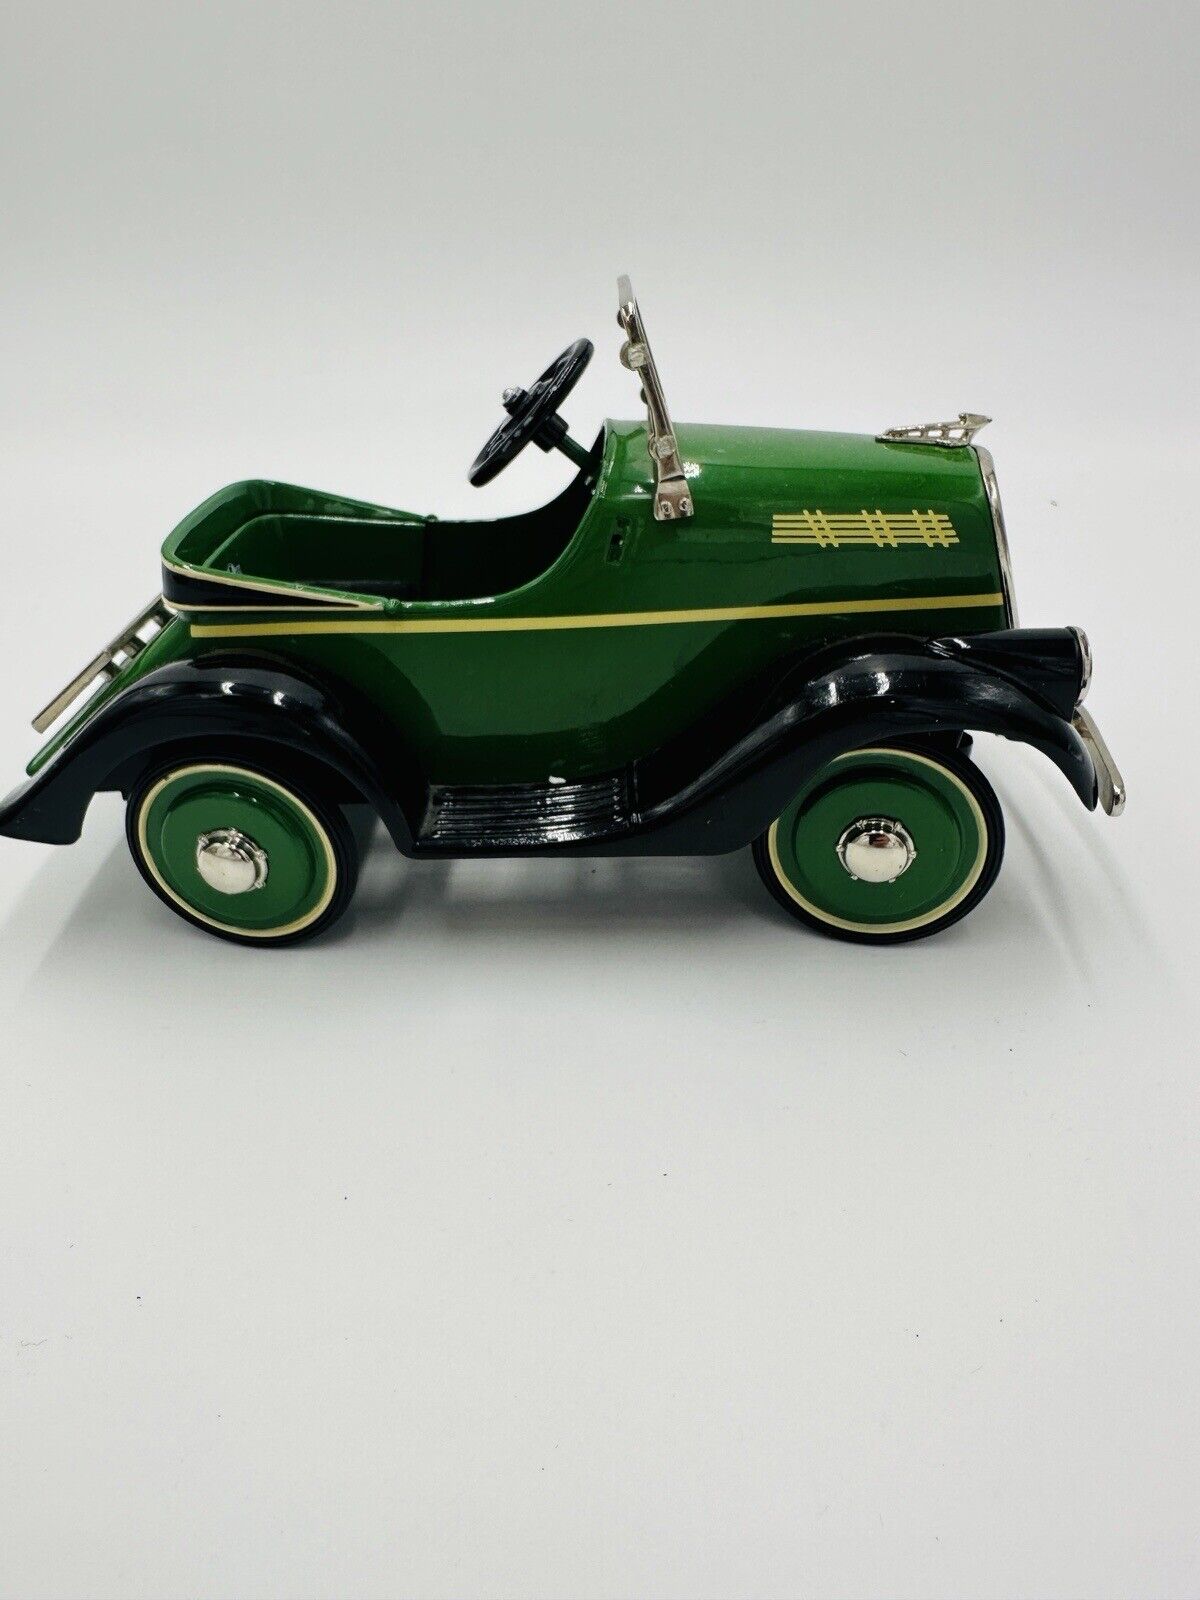 Hallmark Kiddie Car 1935 Steel Craft Luxury Edition Car Die-cast Toy Collectible